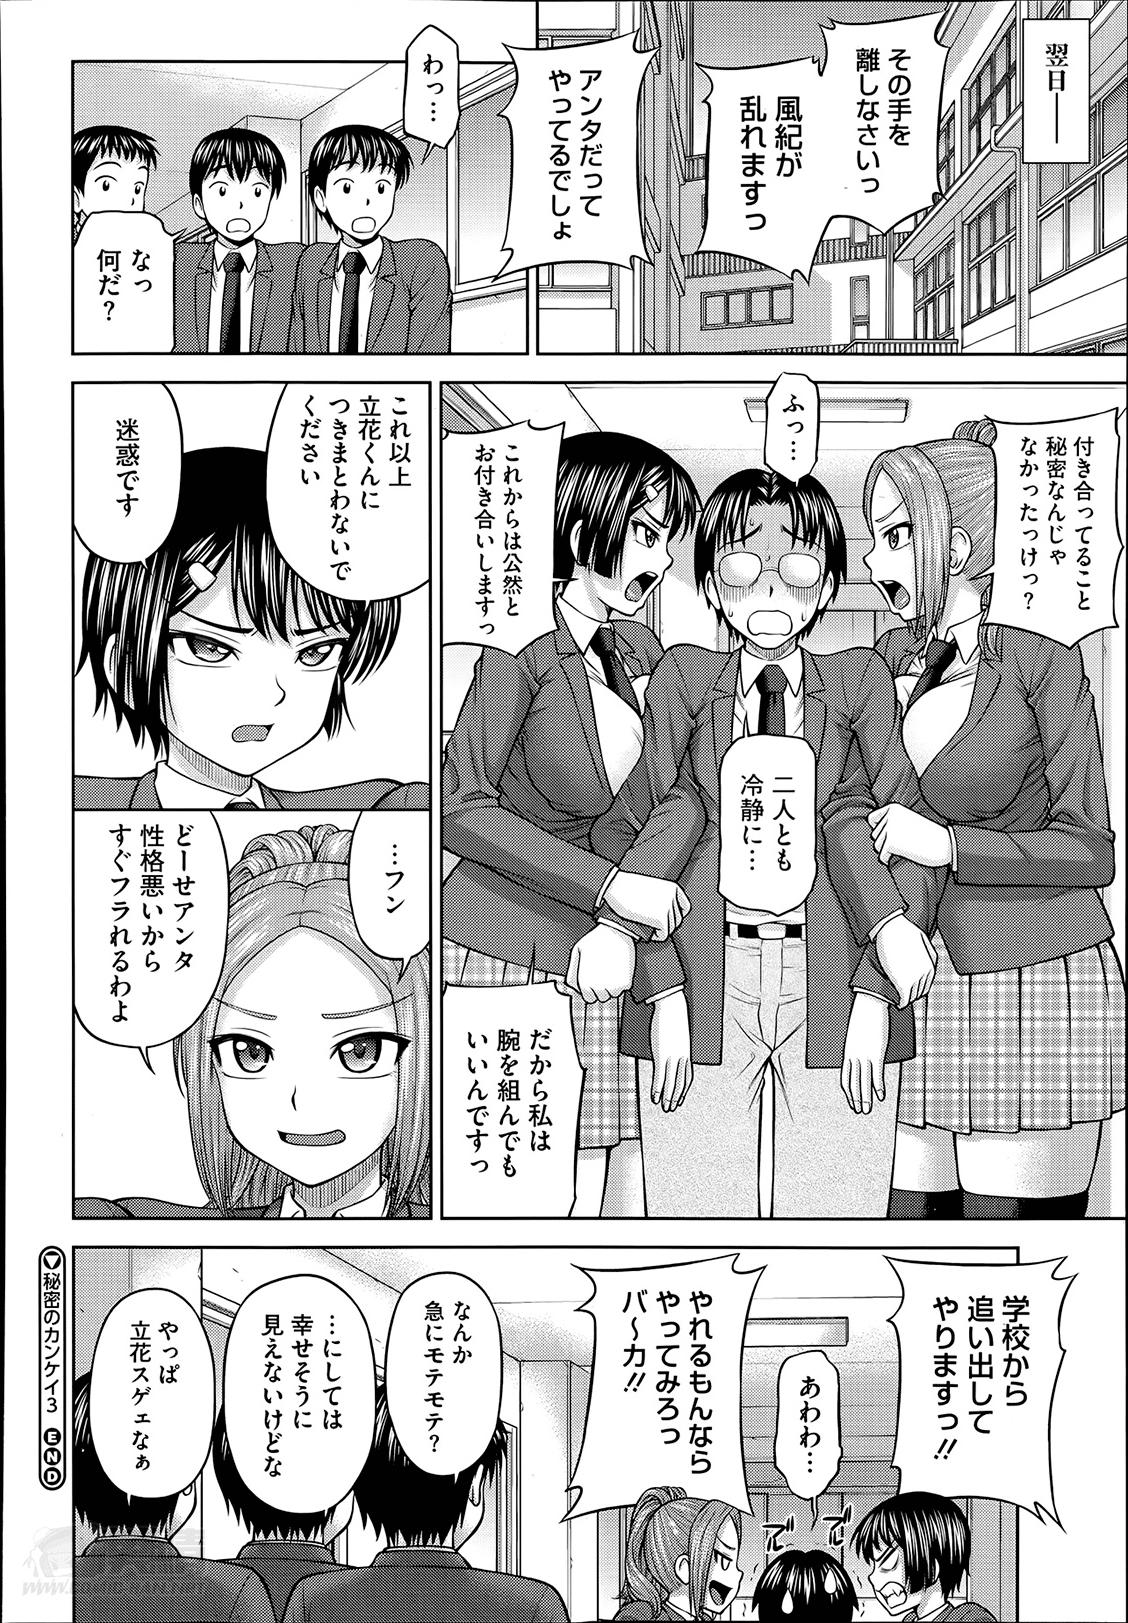 Seduction Himitsu no kankei Ch.1-3 Porno 18 - Page 74